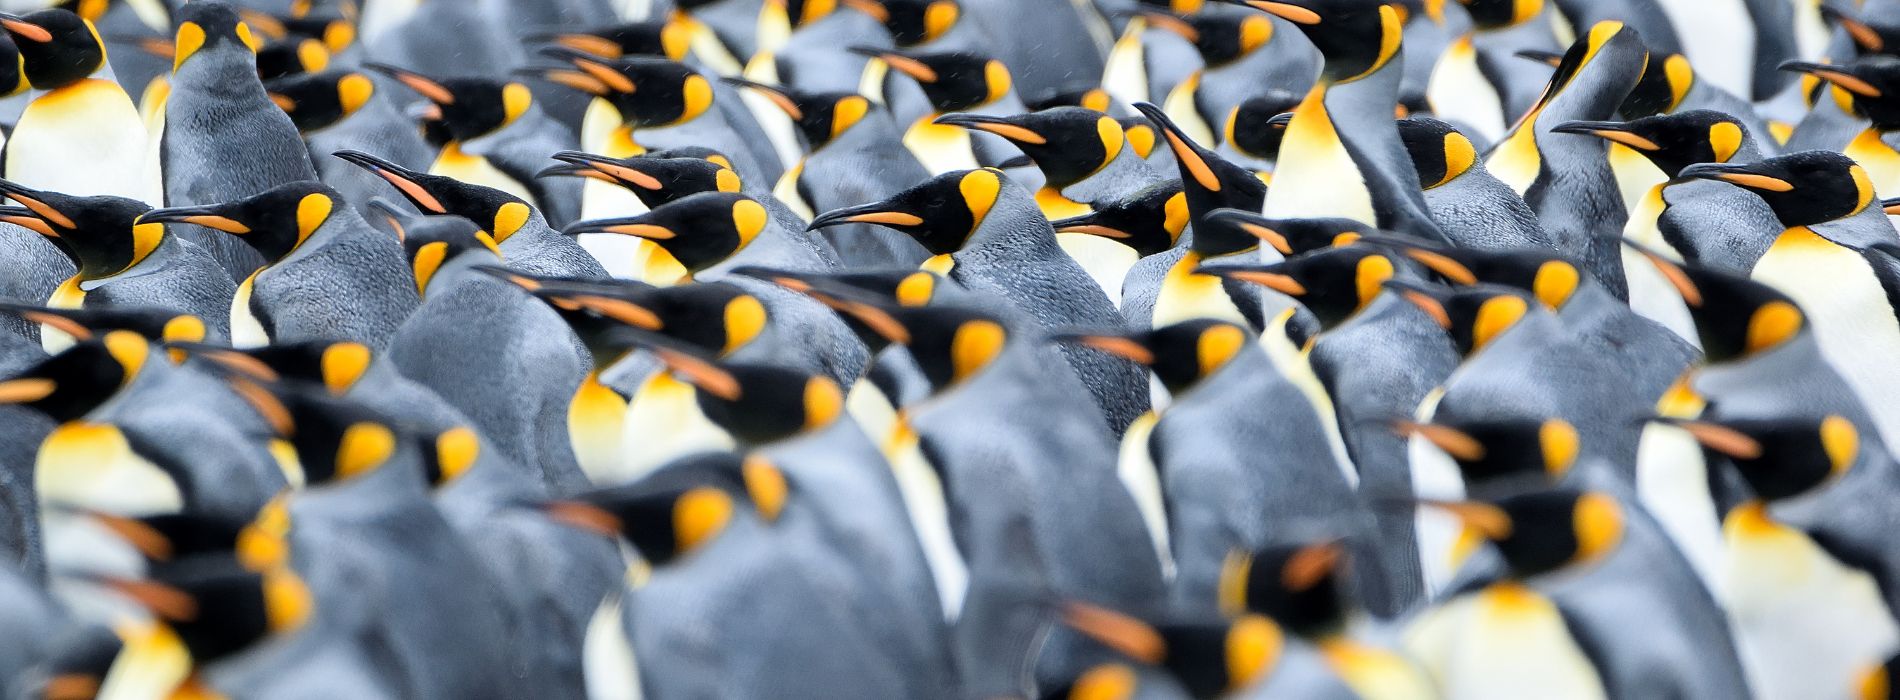 Is penguin a bird or an animal?